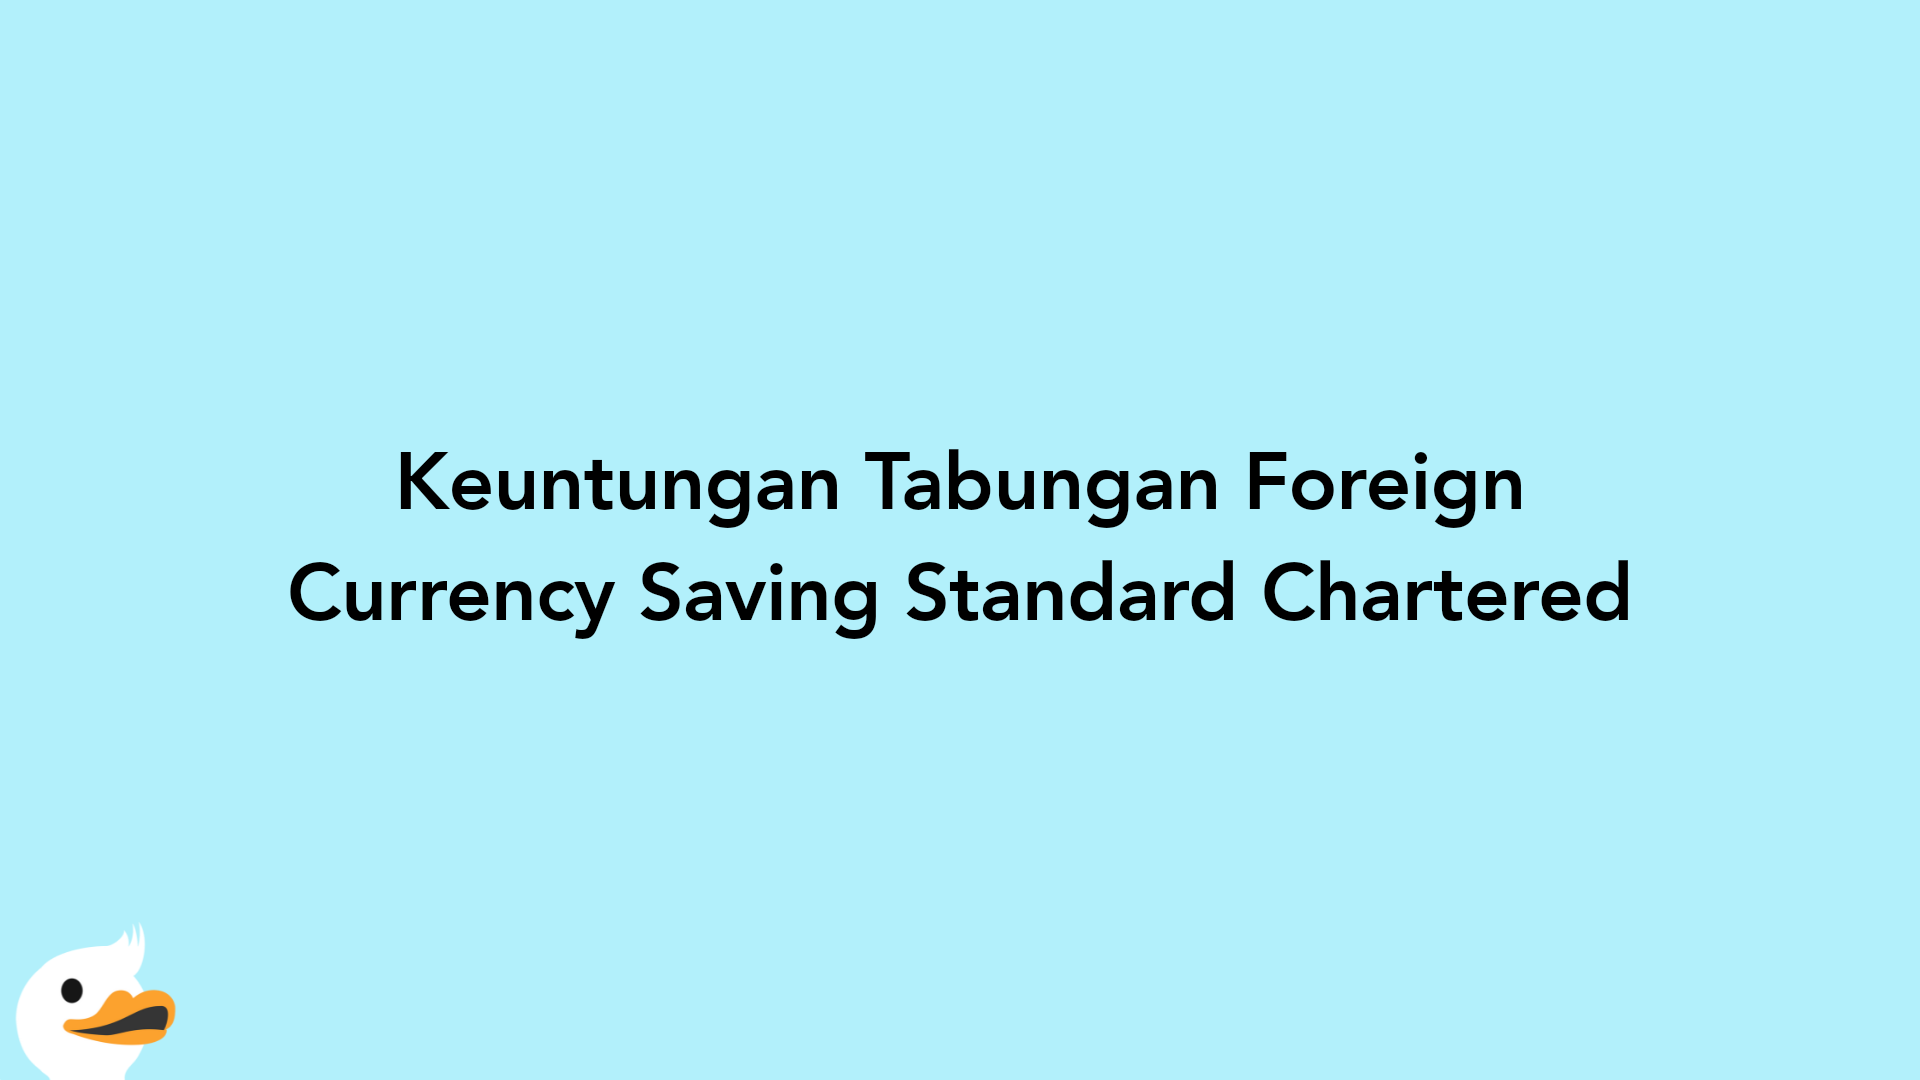 Keuntungan Tabungan Foreign Currency Saving Standard Chartered